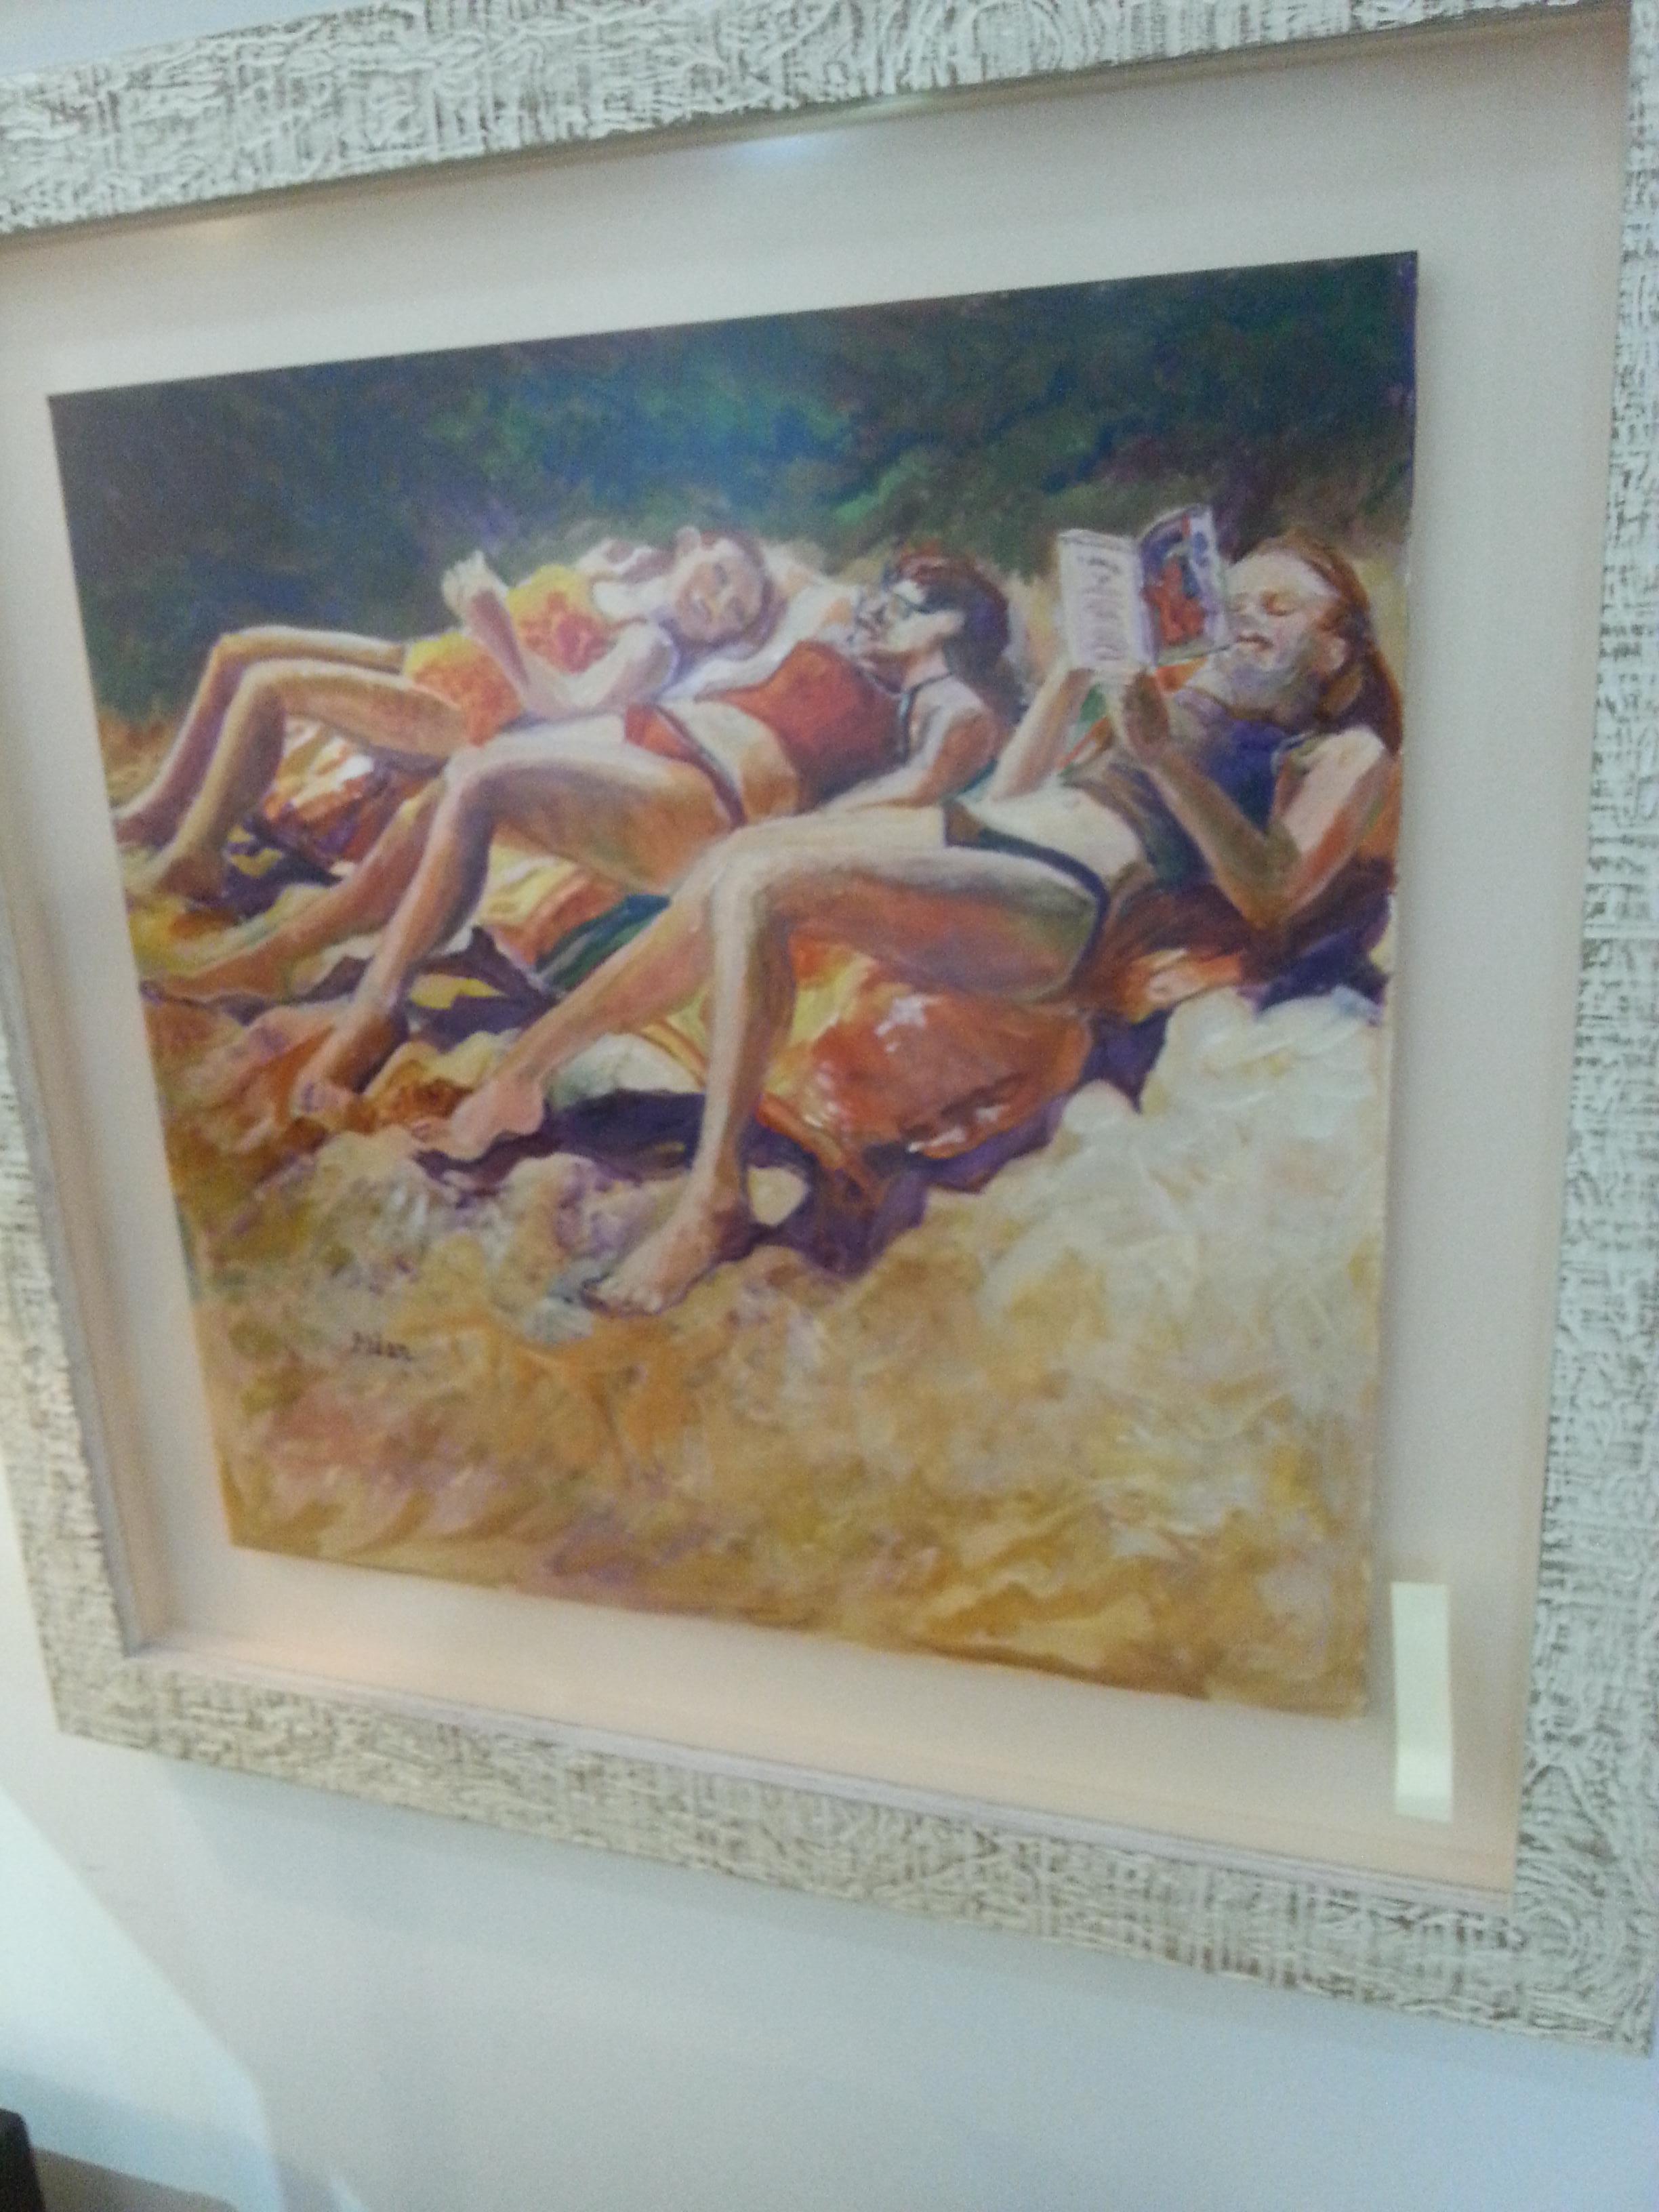 Scène de plage avec des baigneurs au soleil, aquarelle de Selma Alden. Taille de l'image : 17 x 16,75

Artiste répertorié : Selma Alden travaille comme conservatrice pour la Cape Cod Art Association. Bien qu'elle ait fréquenté la Museum School et